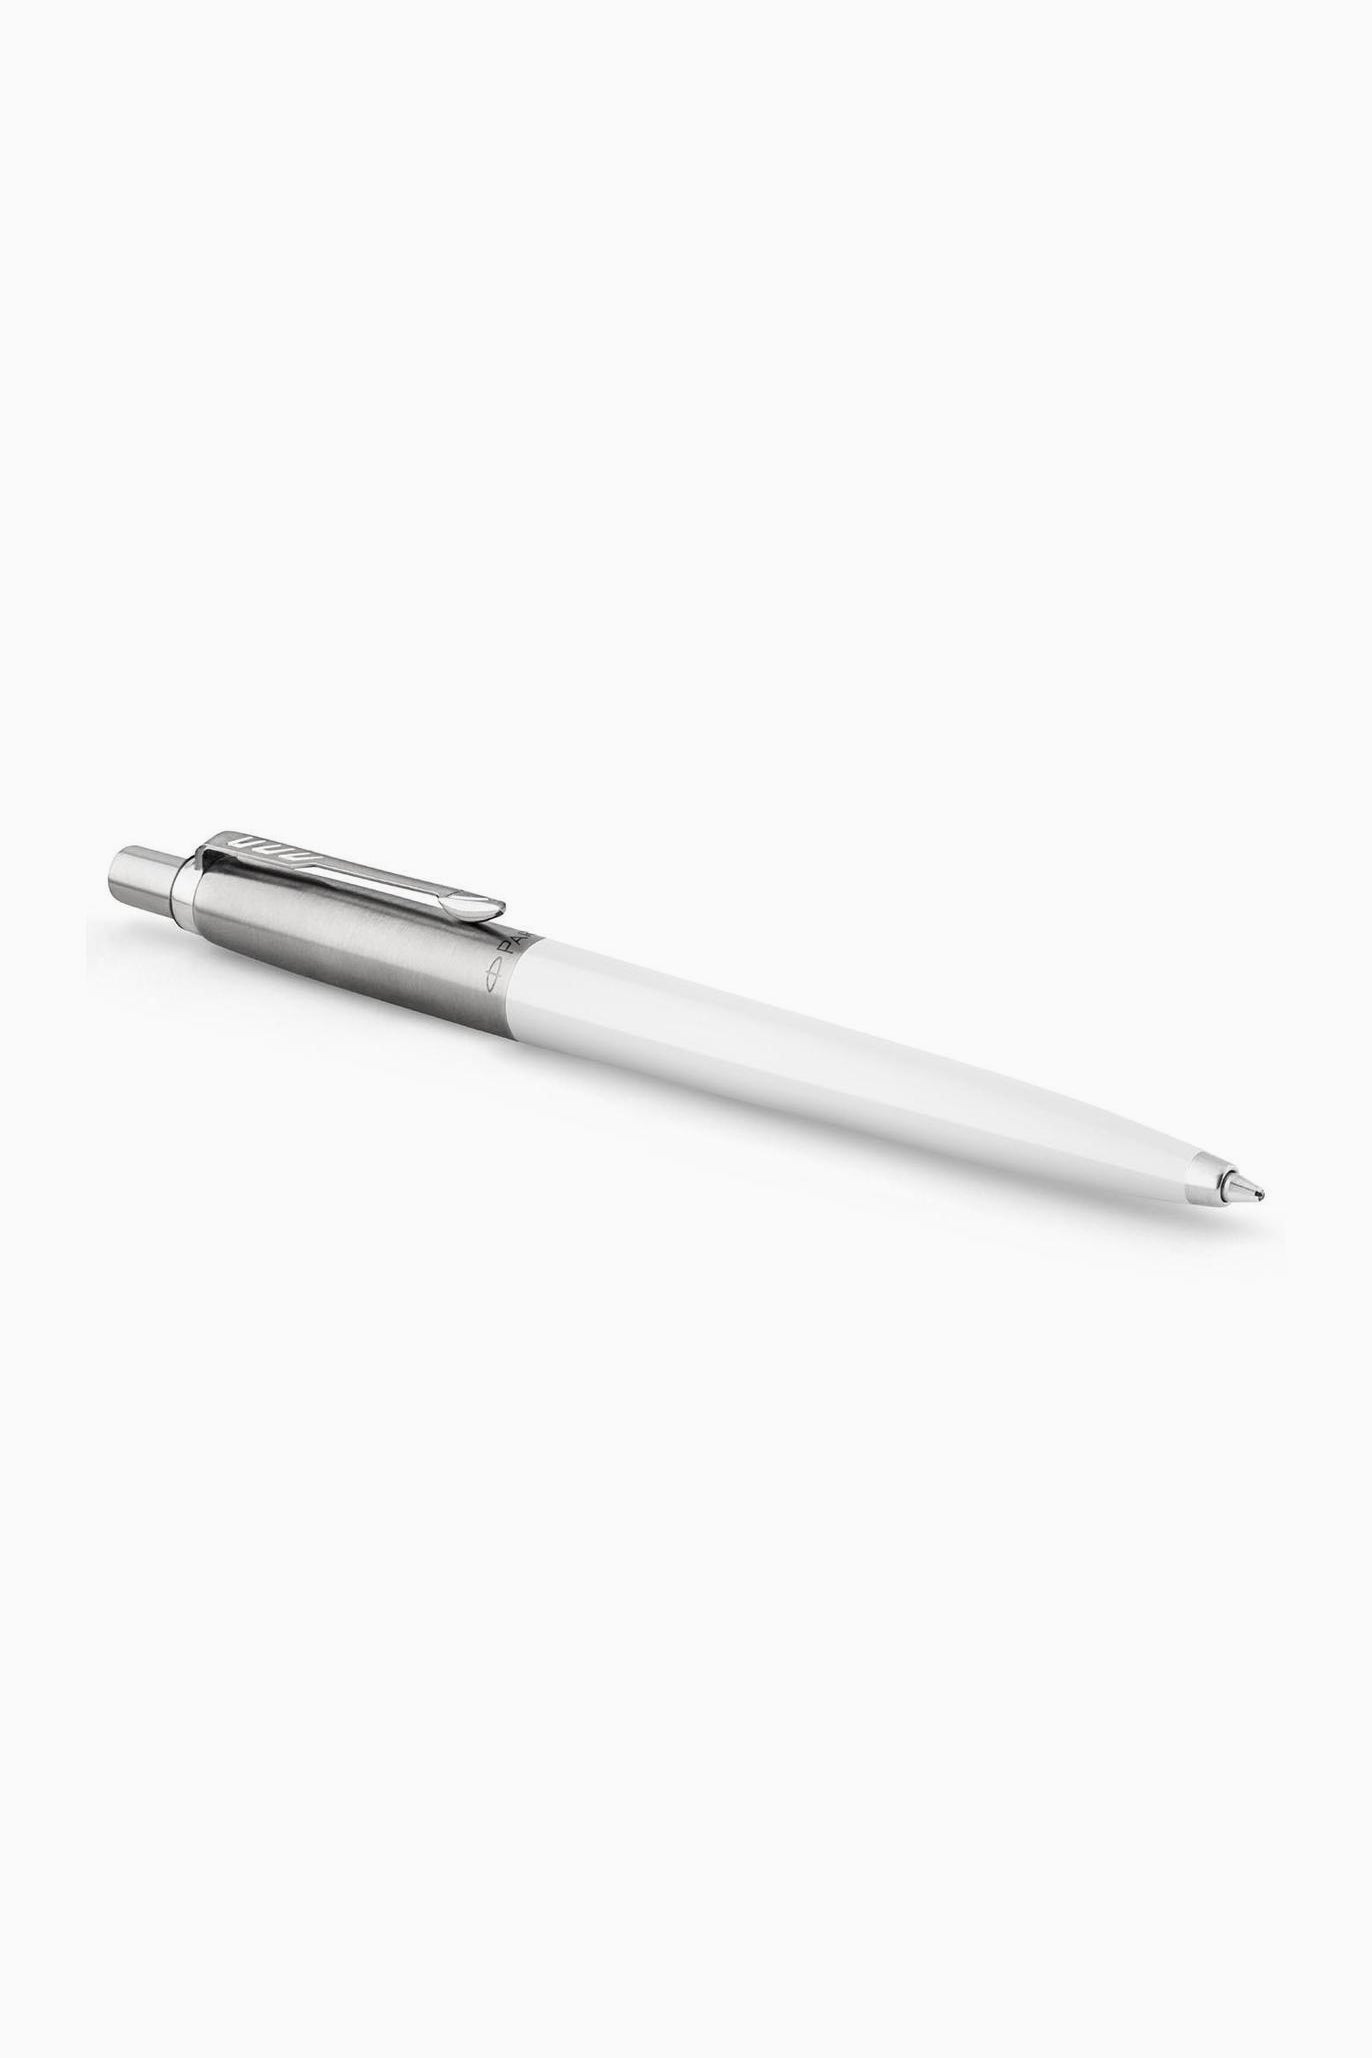 Jotter ballpoint pen white-Parker-[interior]-[design]-KIOSK48TH